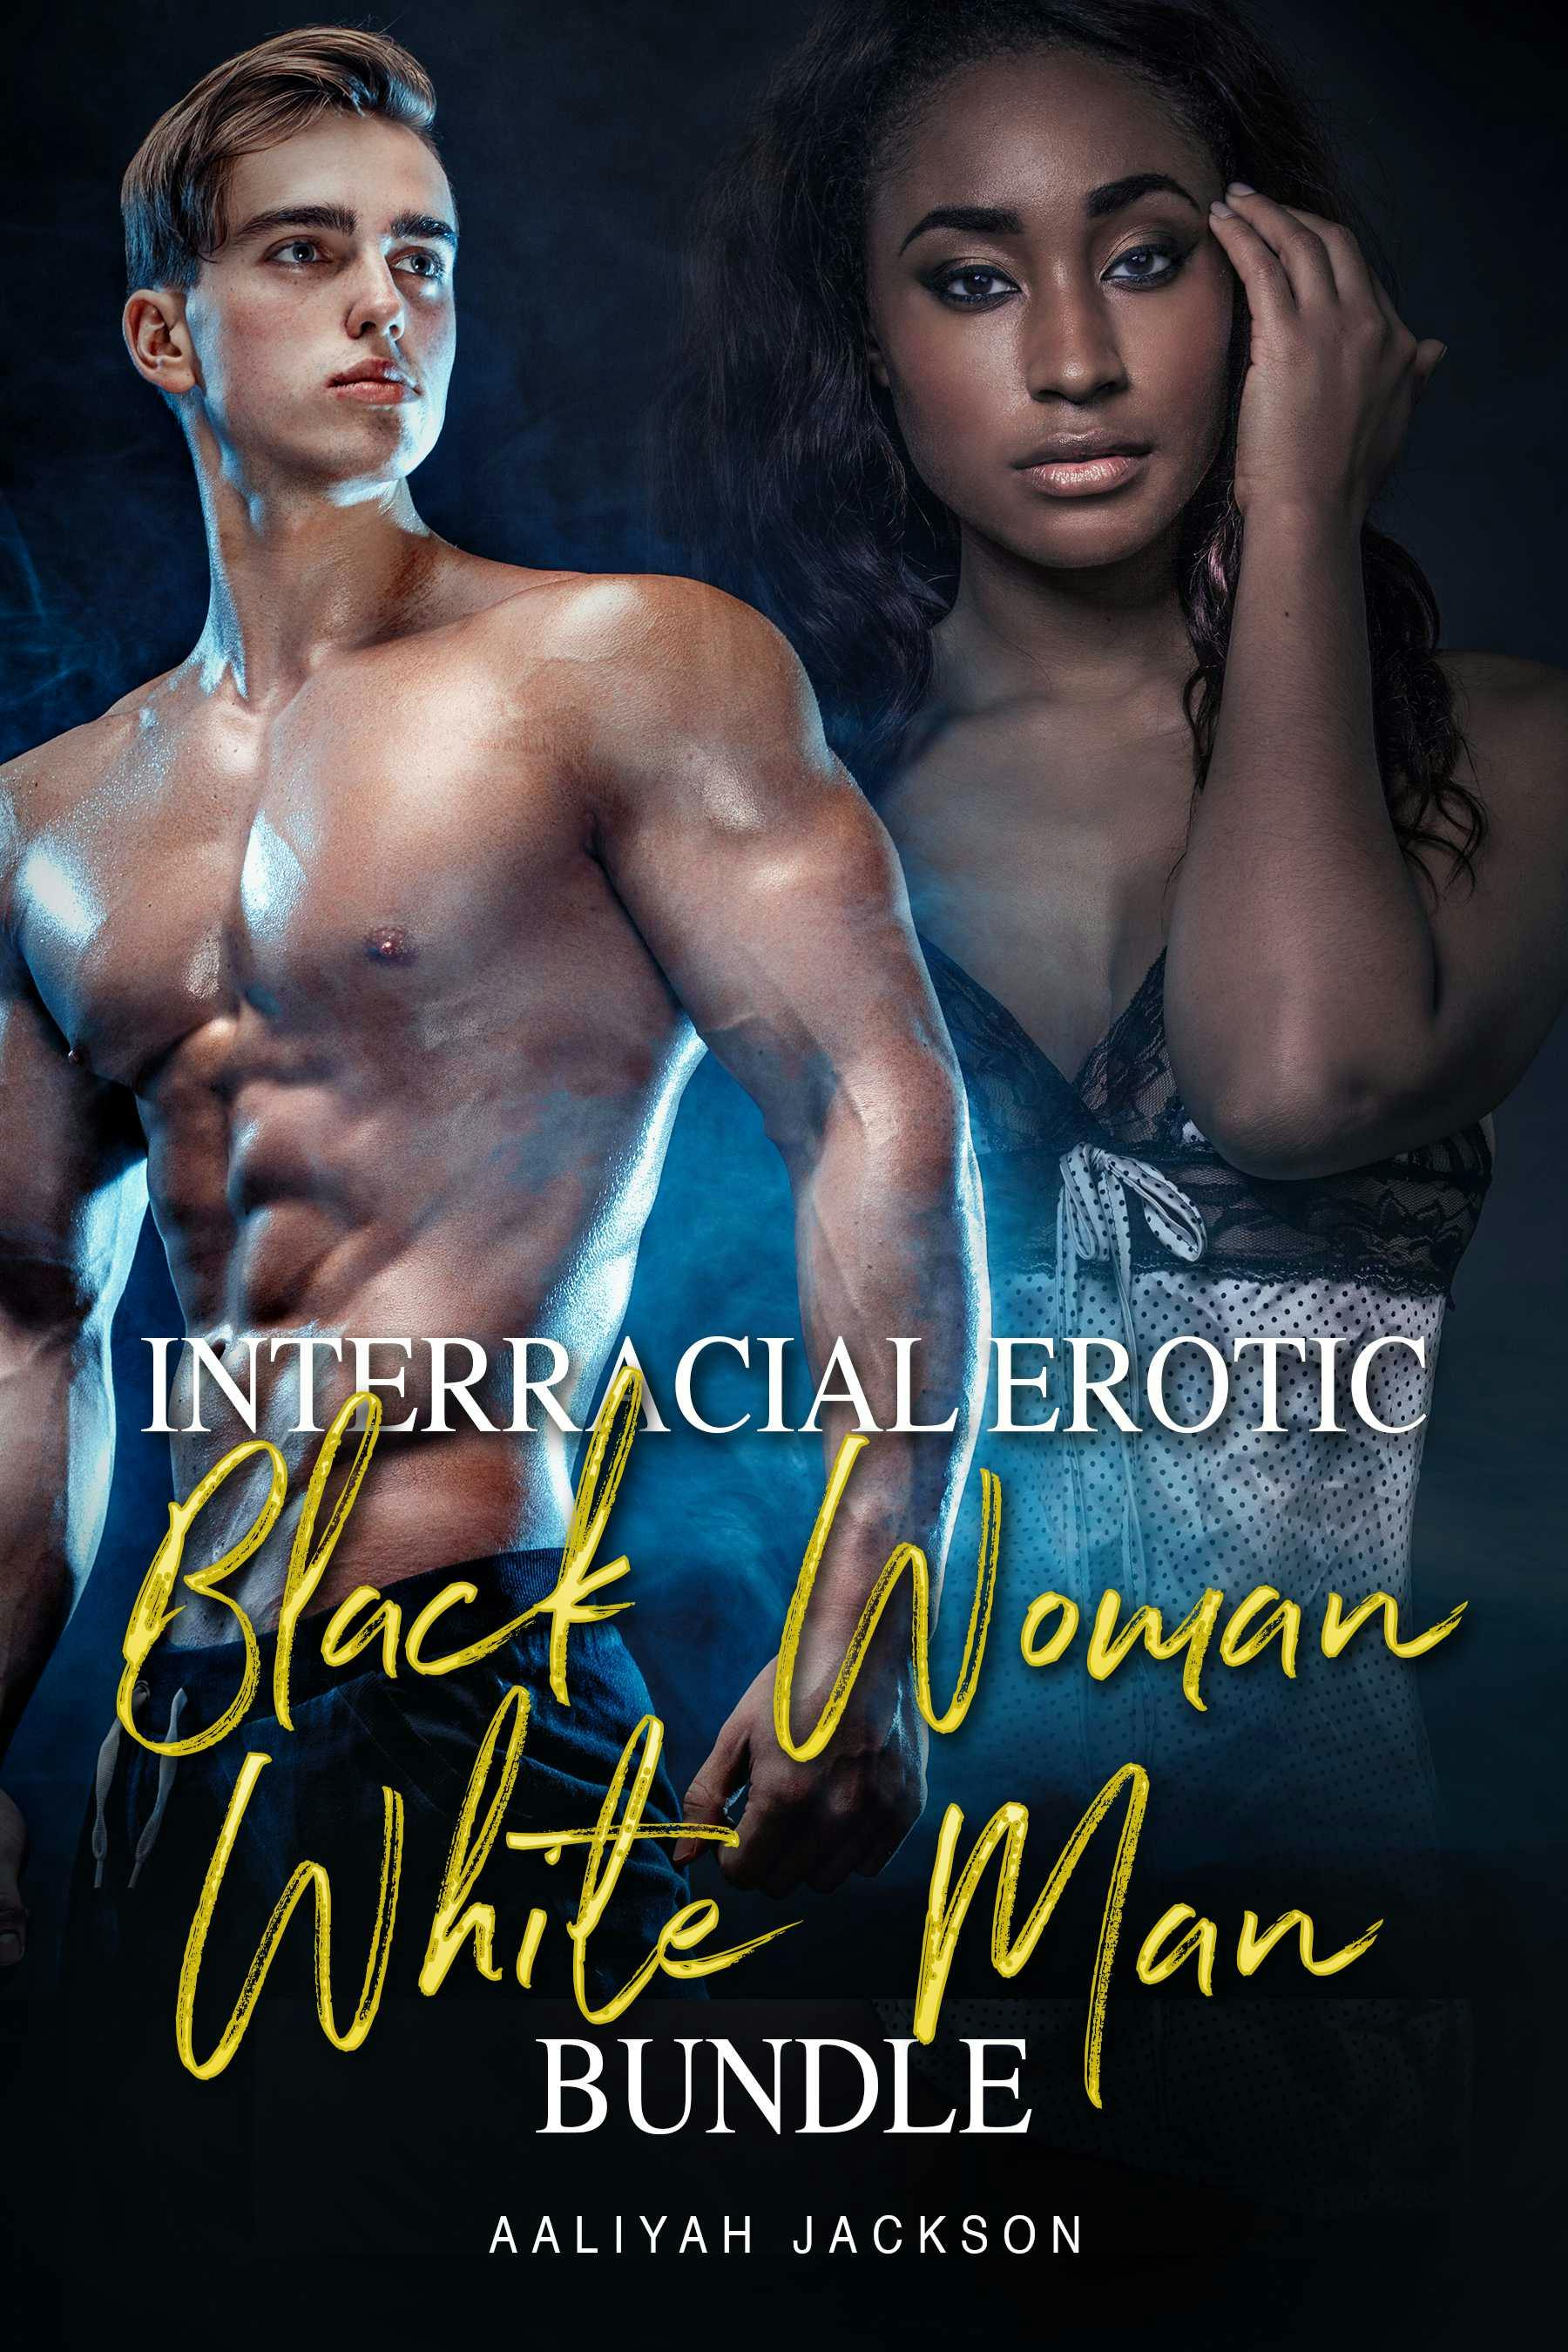 Interracial Erotic Black Woman White Man Bundle - Aaliyah Jackson